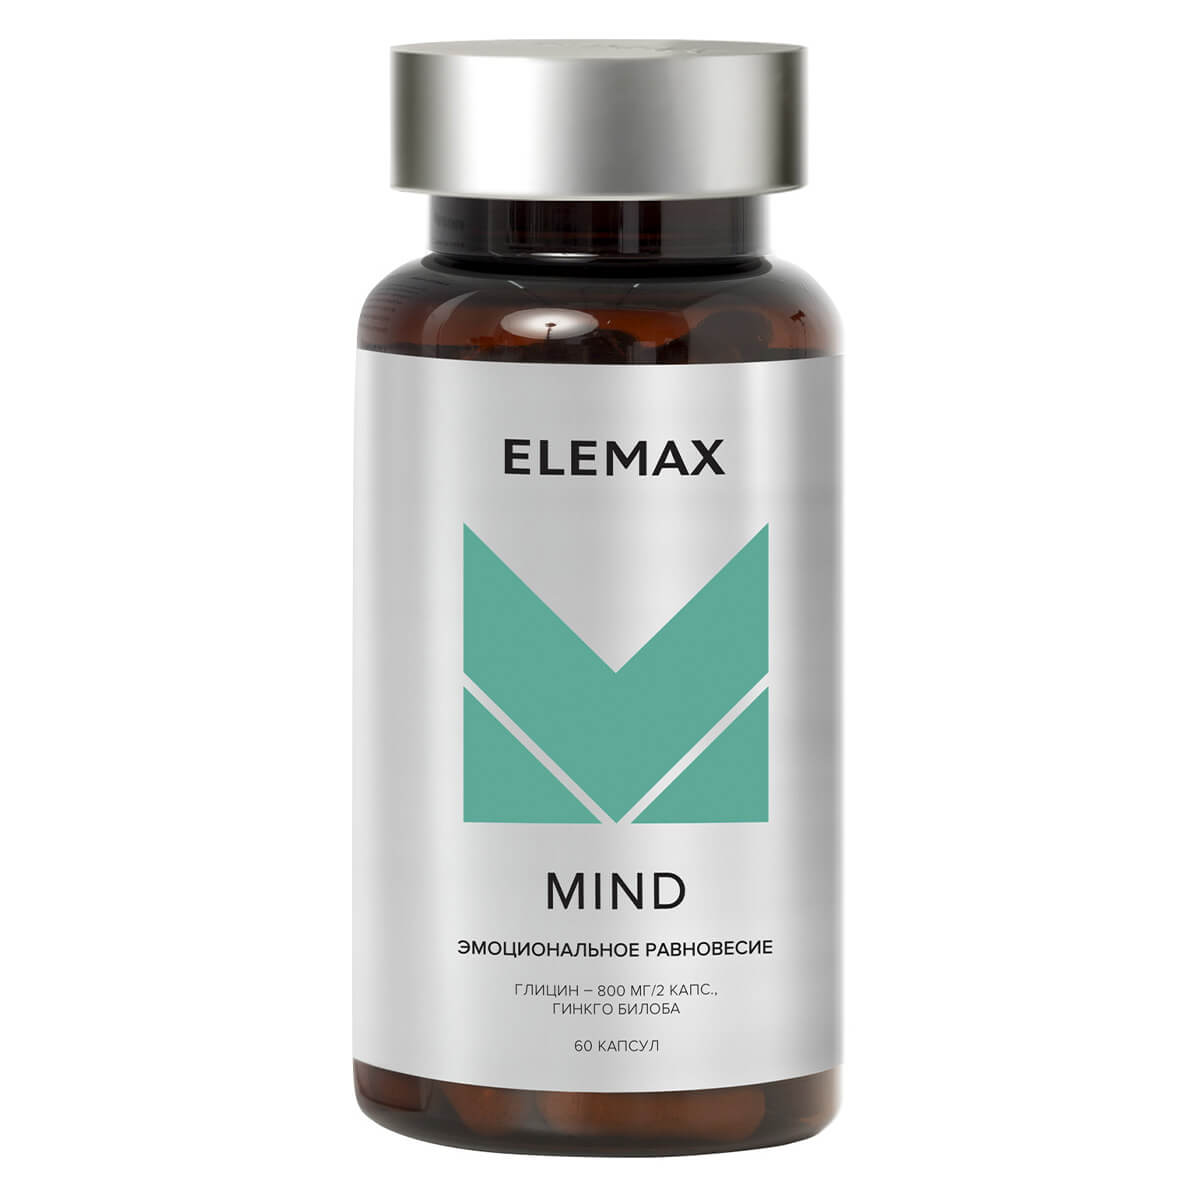 Биологически активная добавка к пище "Майнд", капсулы 60 шт по 650 мг, Elemax